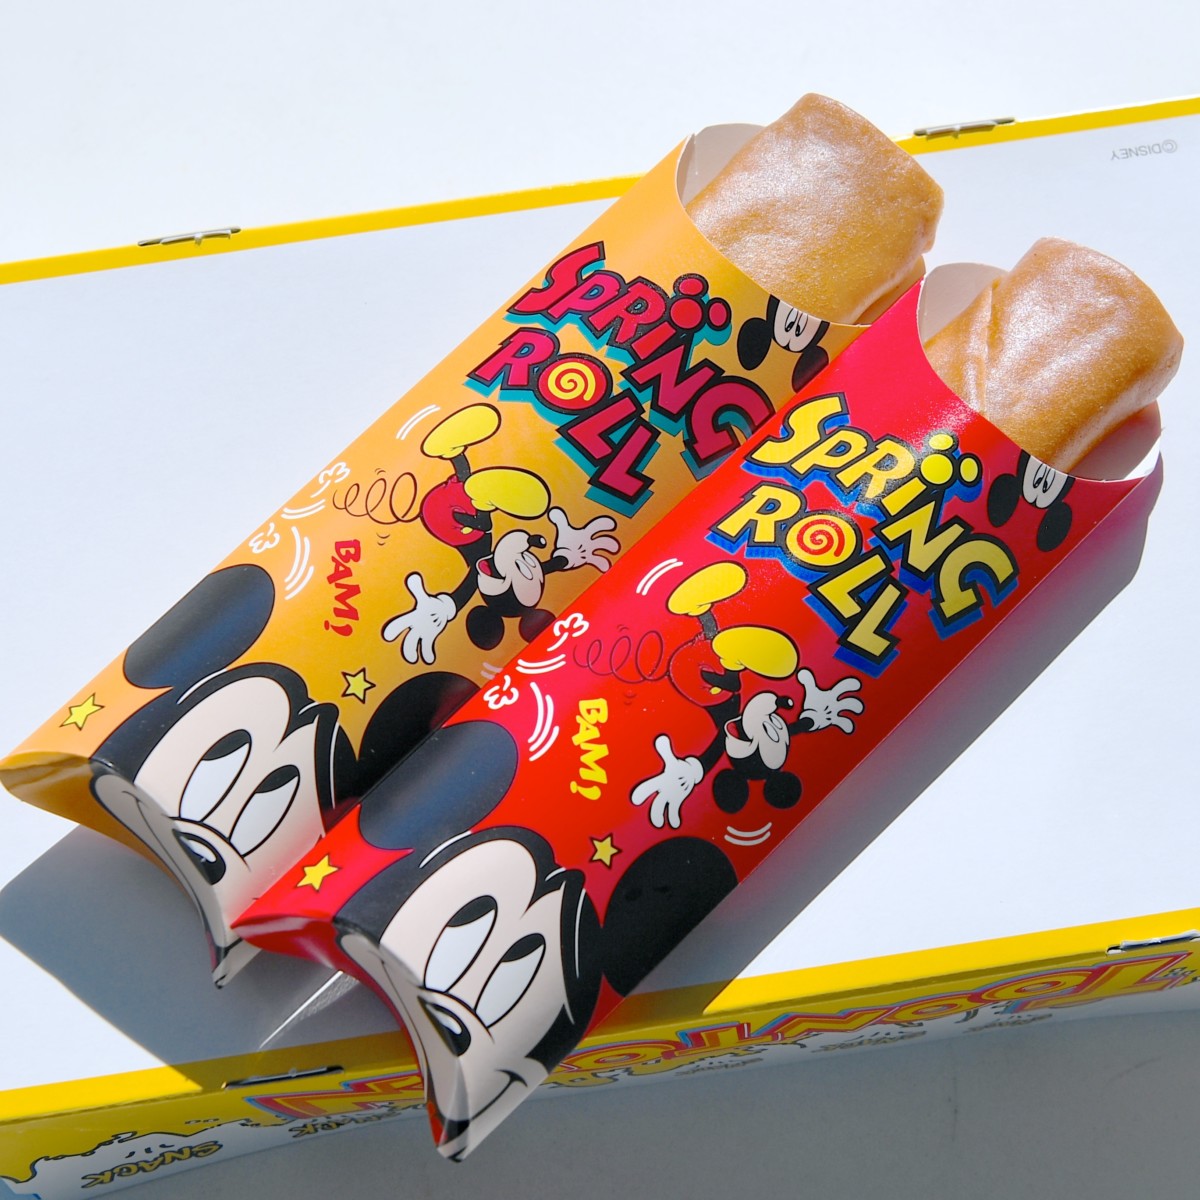 エッグ シュリンプ ピザ味のスプリングロール 東京ディズニーランド ミッキーのトレーラー グランドメニュー